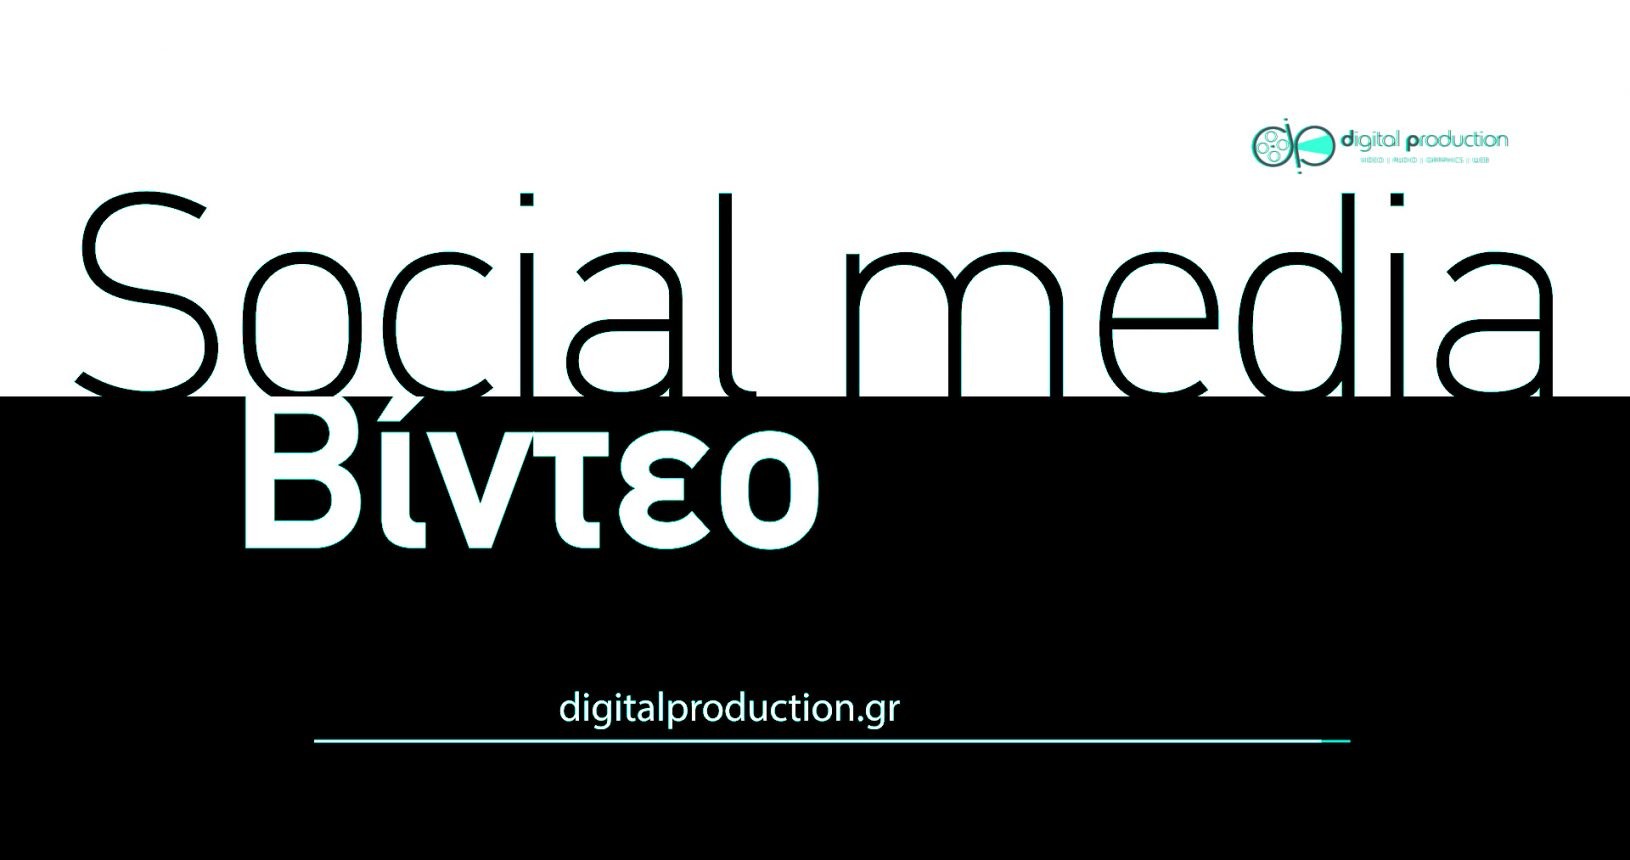 Δημιουργία social media βίντεο, facebook - youtube - vimeo - instagram | Digital Production